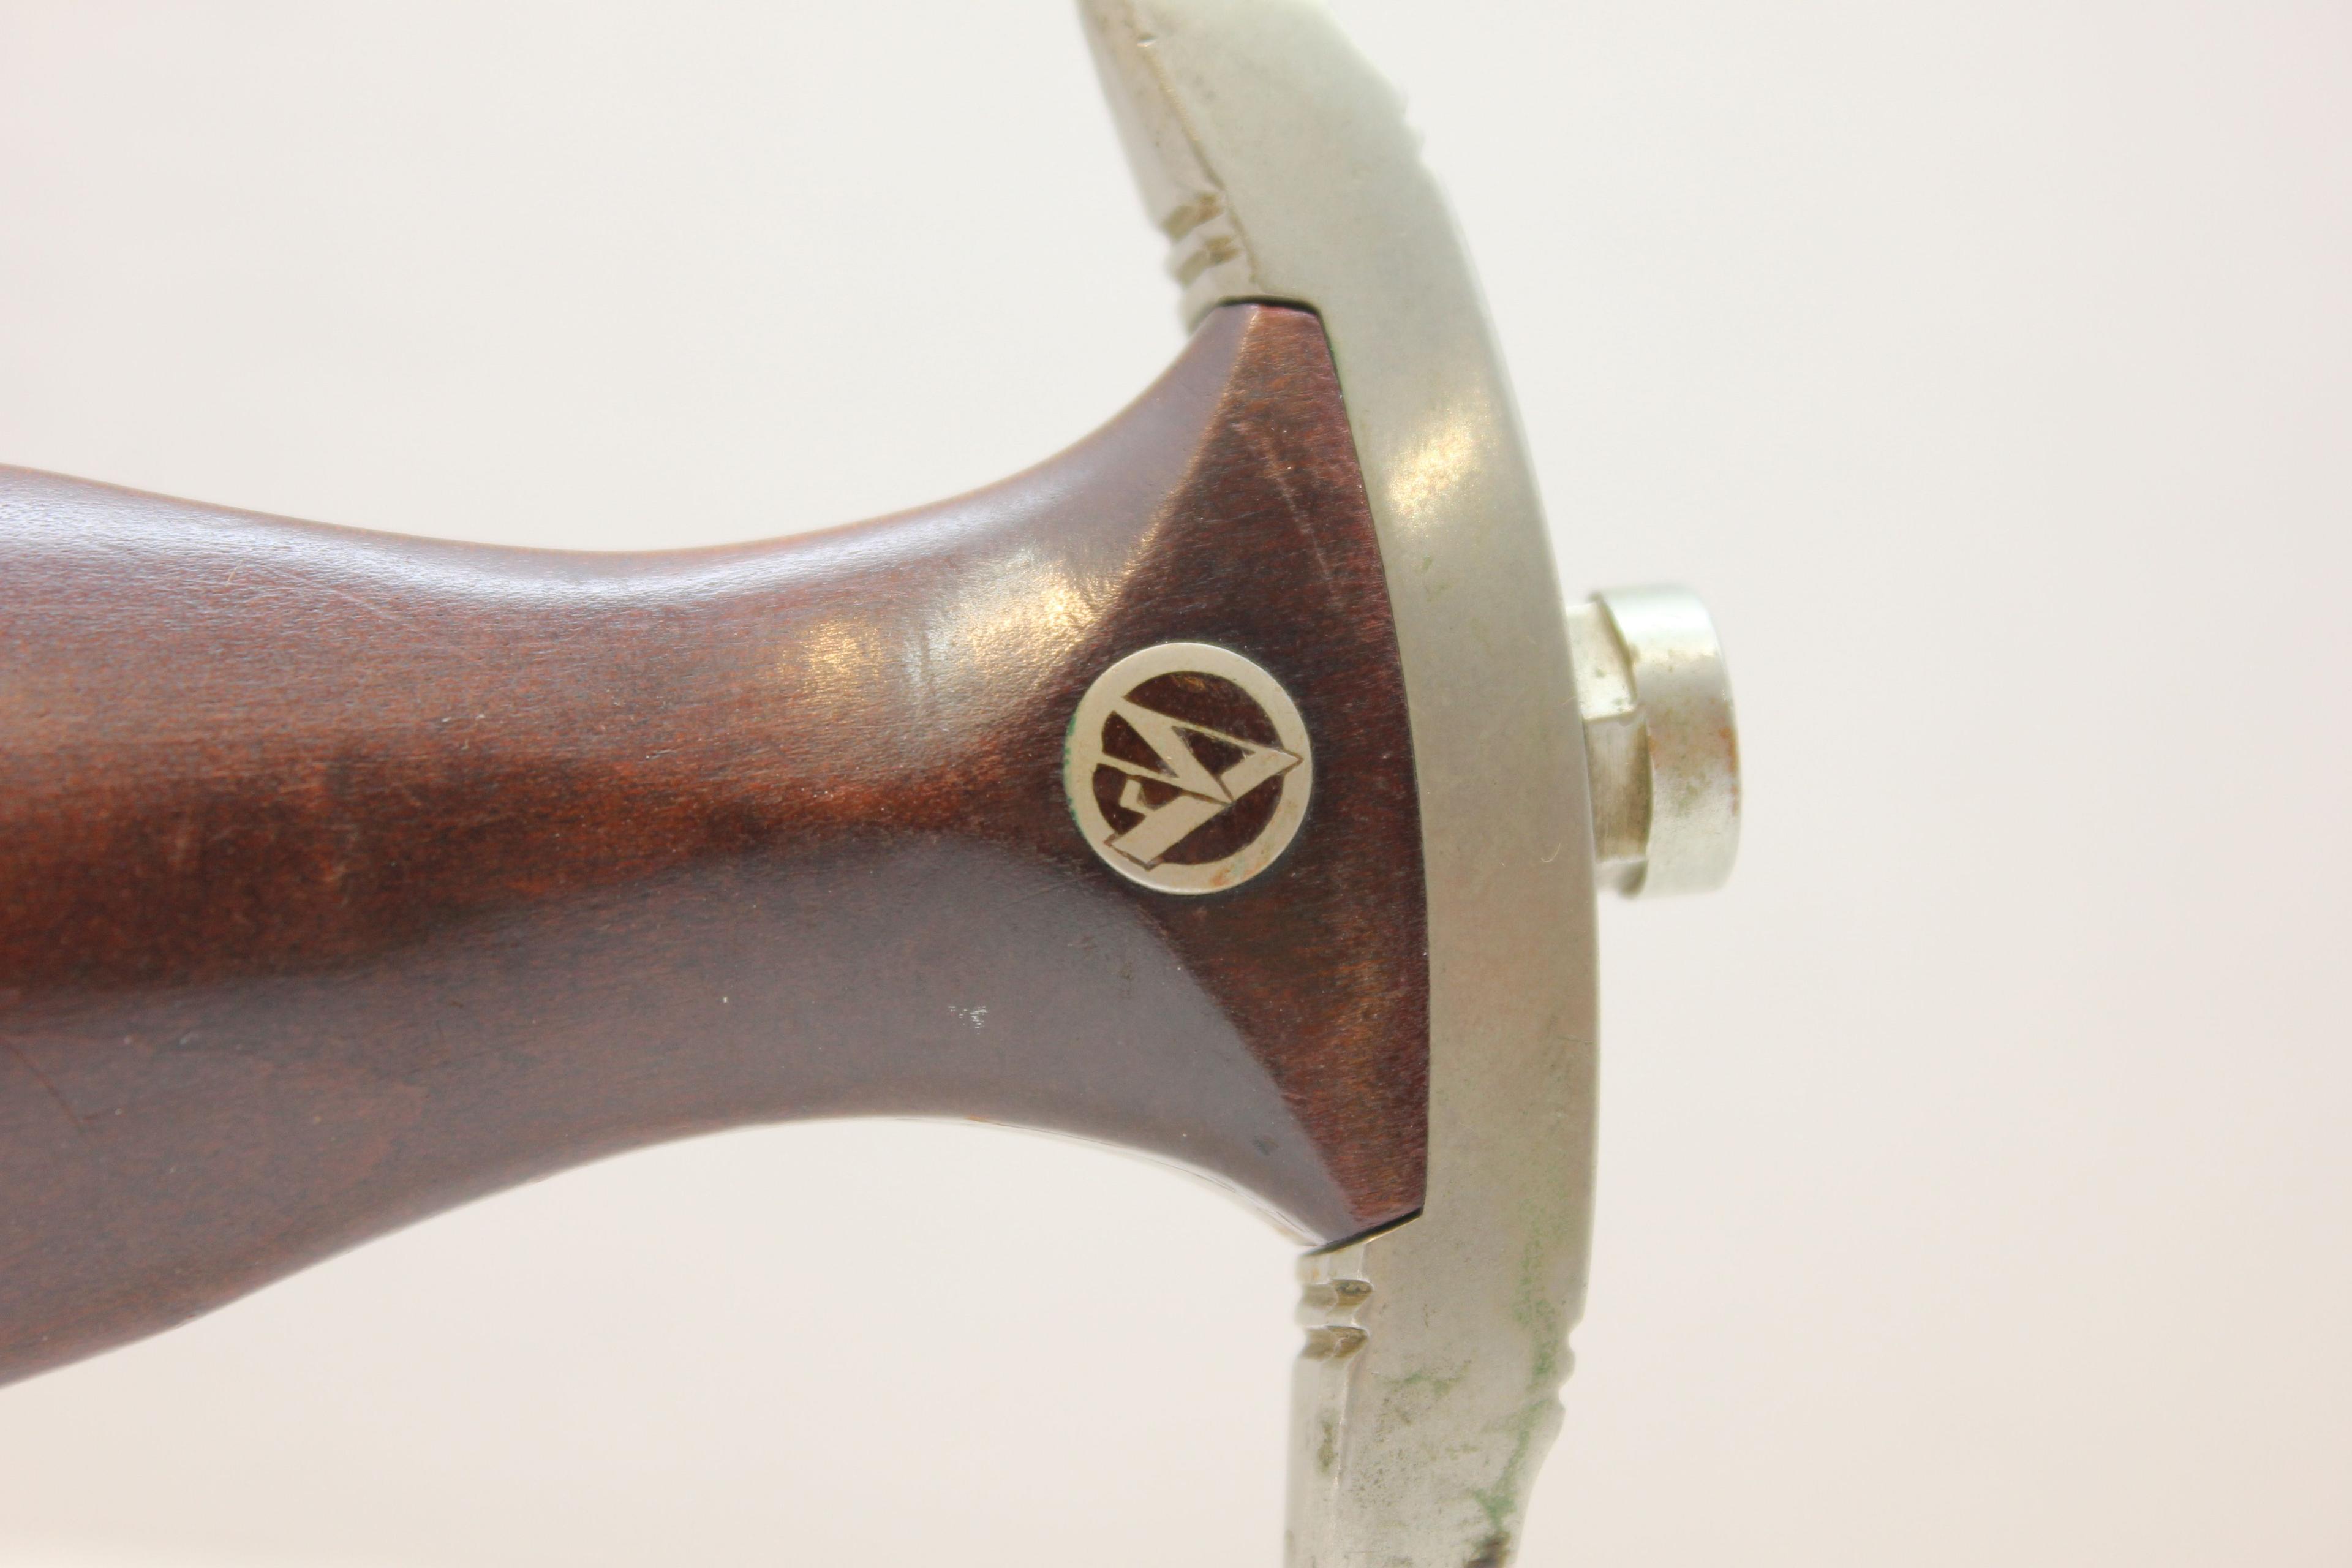 German Dagger Replica w/Metal Scabbard; Mfg. By Solingen, Germany; 8-3/4" Blade, 13-3/4" OAL